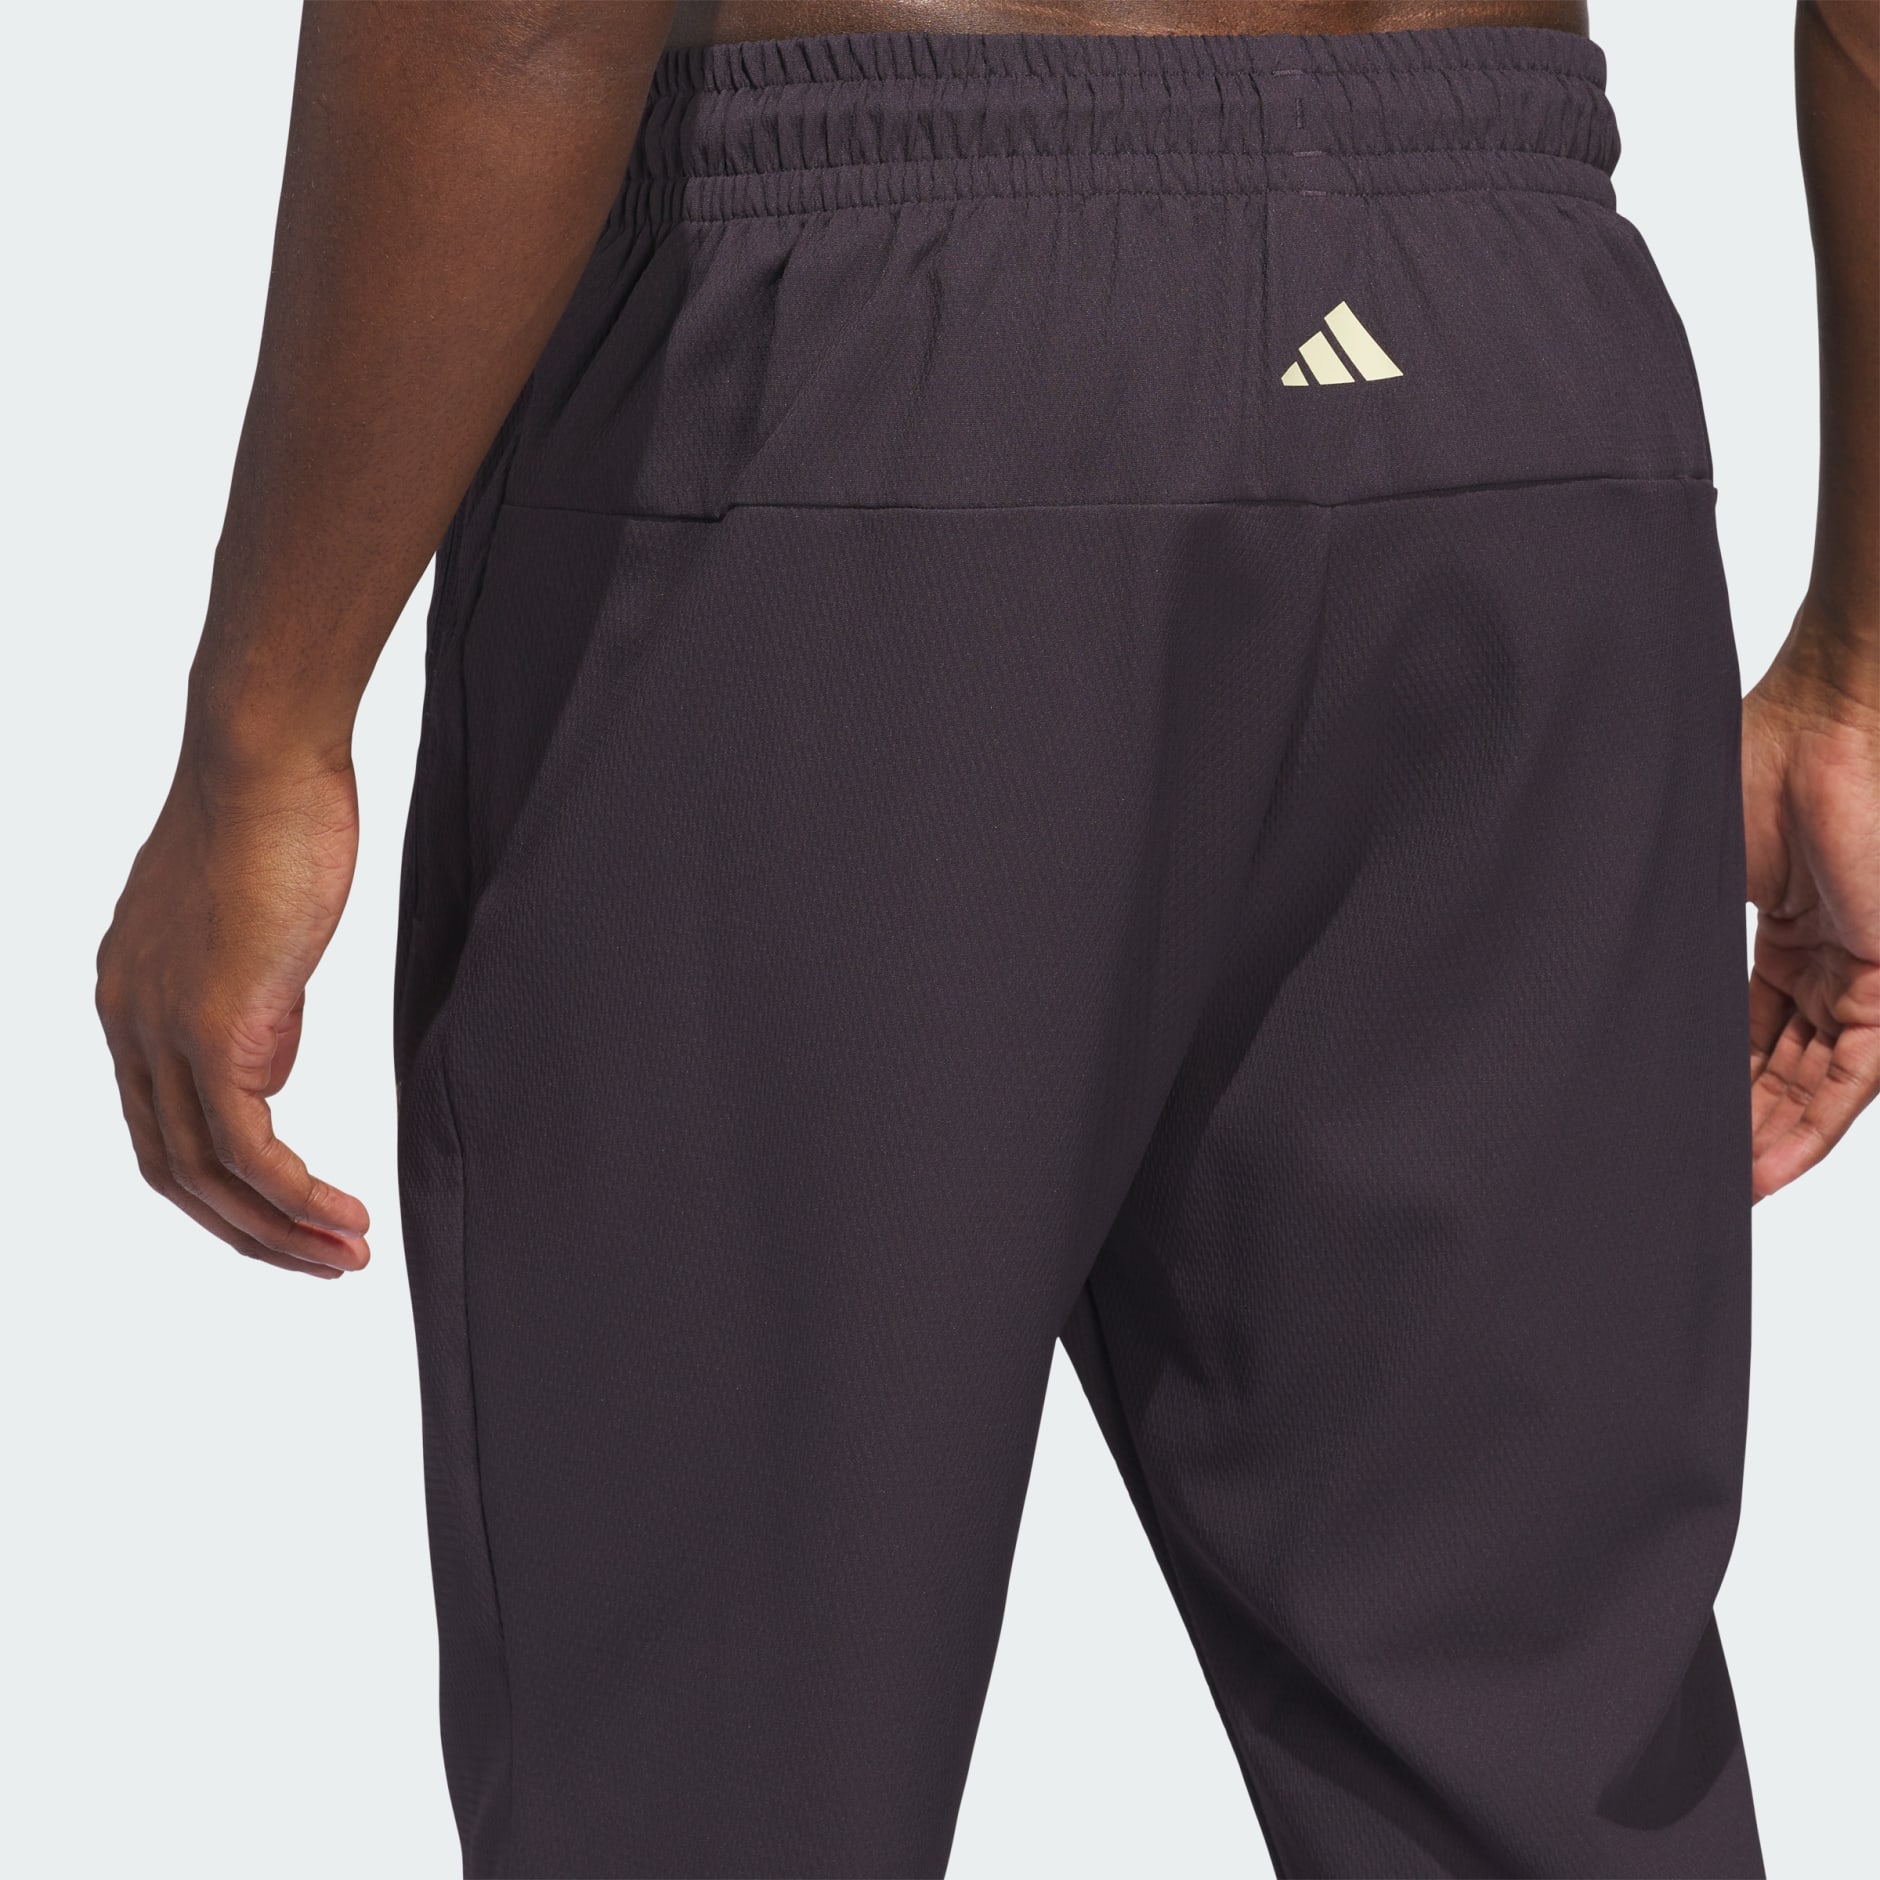 Adidas / Originals Men's Adicolor Classics Beckenbauer PrimeBlue Track Pants